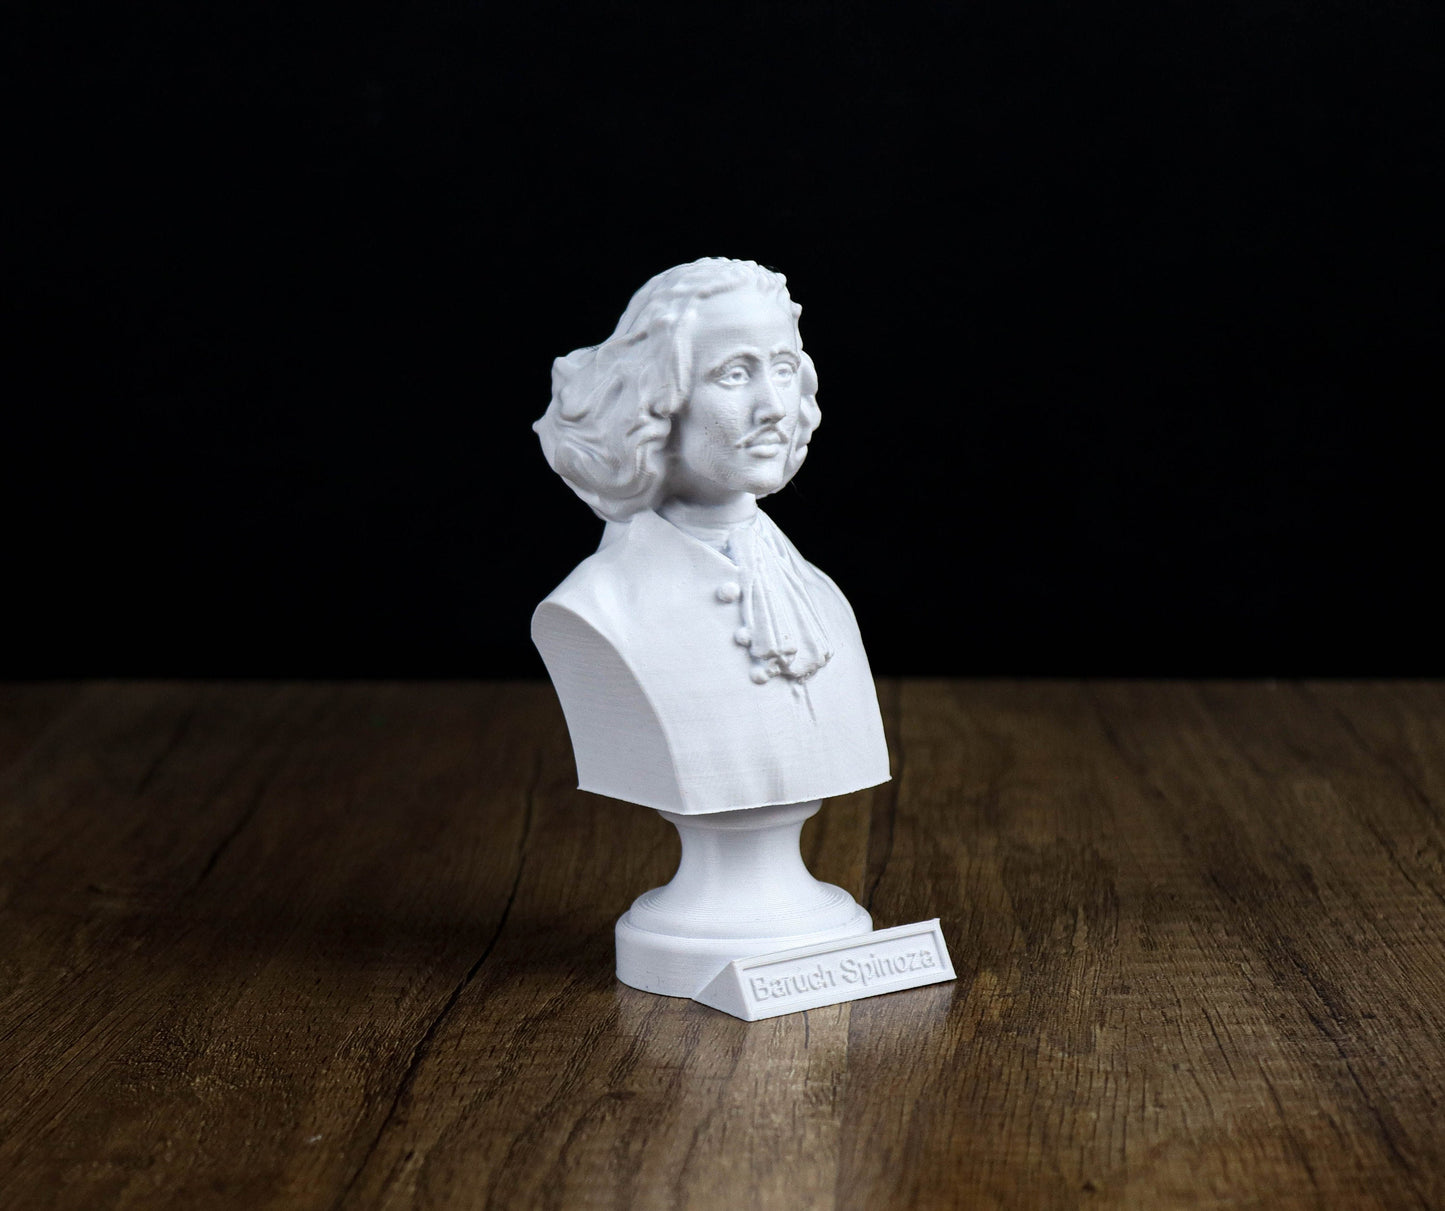 Baruch Spinoza Bust, Dutch Philosopher Sculpture